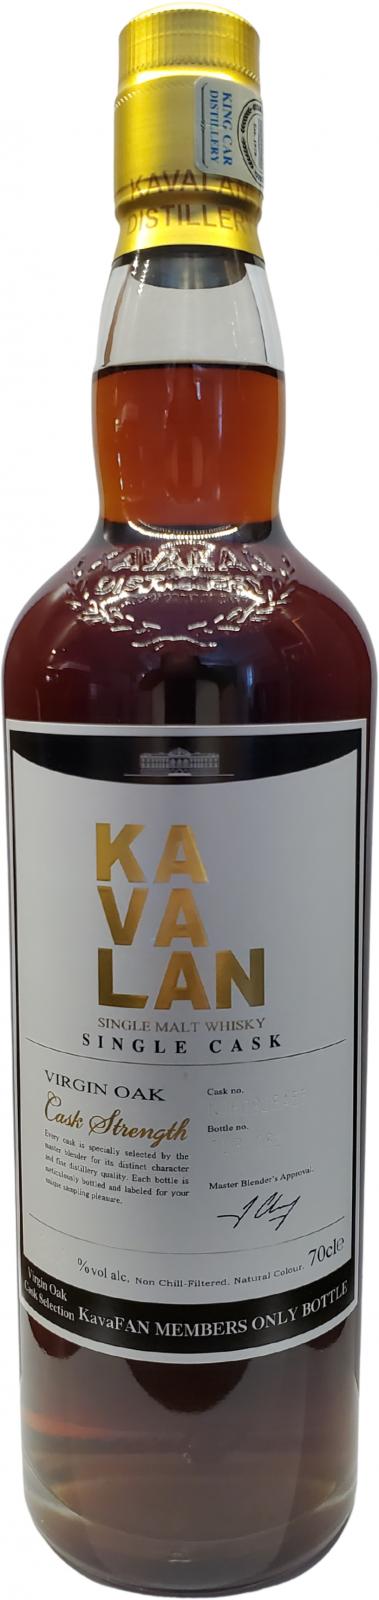 Kavalan Selection Virgin Oak N060828A55 KavaFAN Members ONLY Bottle 59.4% 700ml